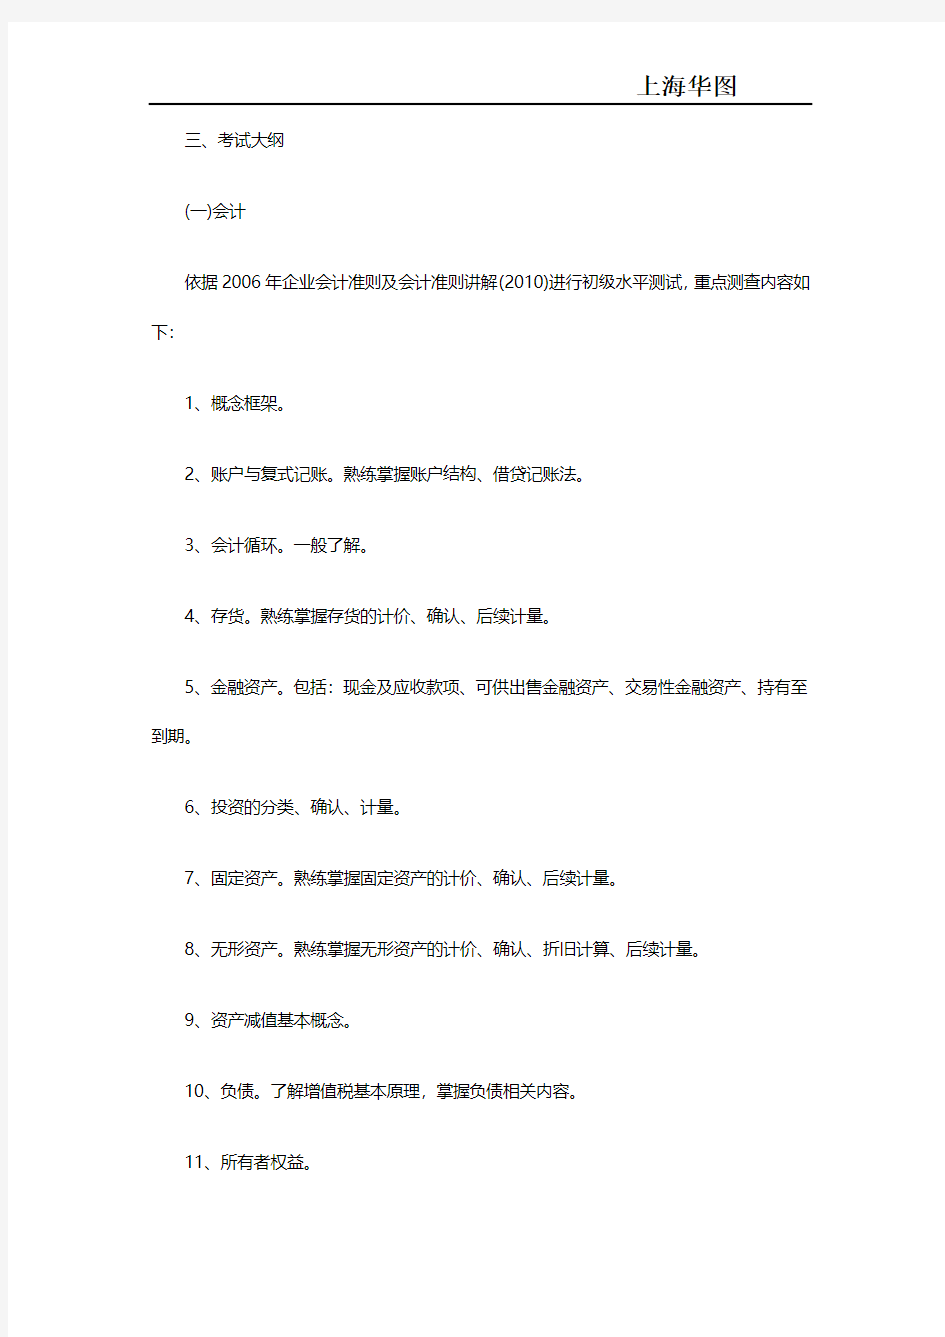 2017上海浦东新区事业单位招聘专业课考试公告各岗位考试内容